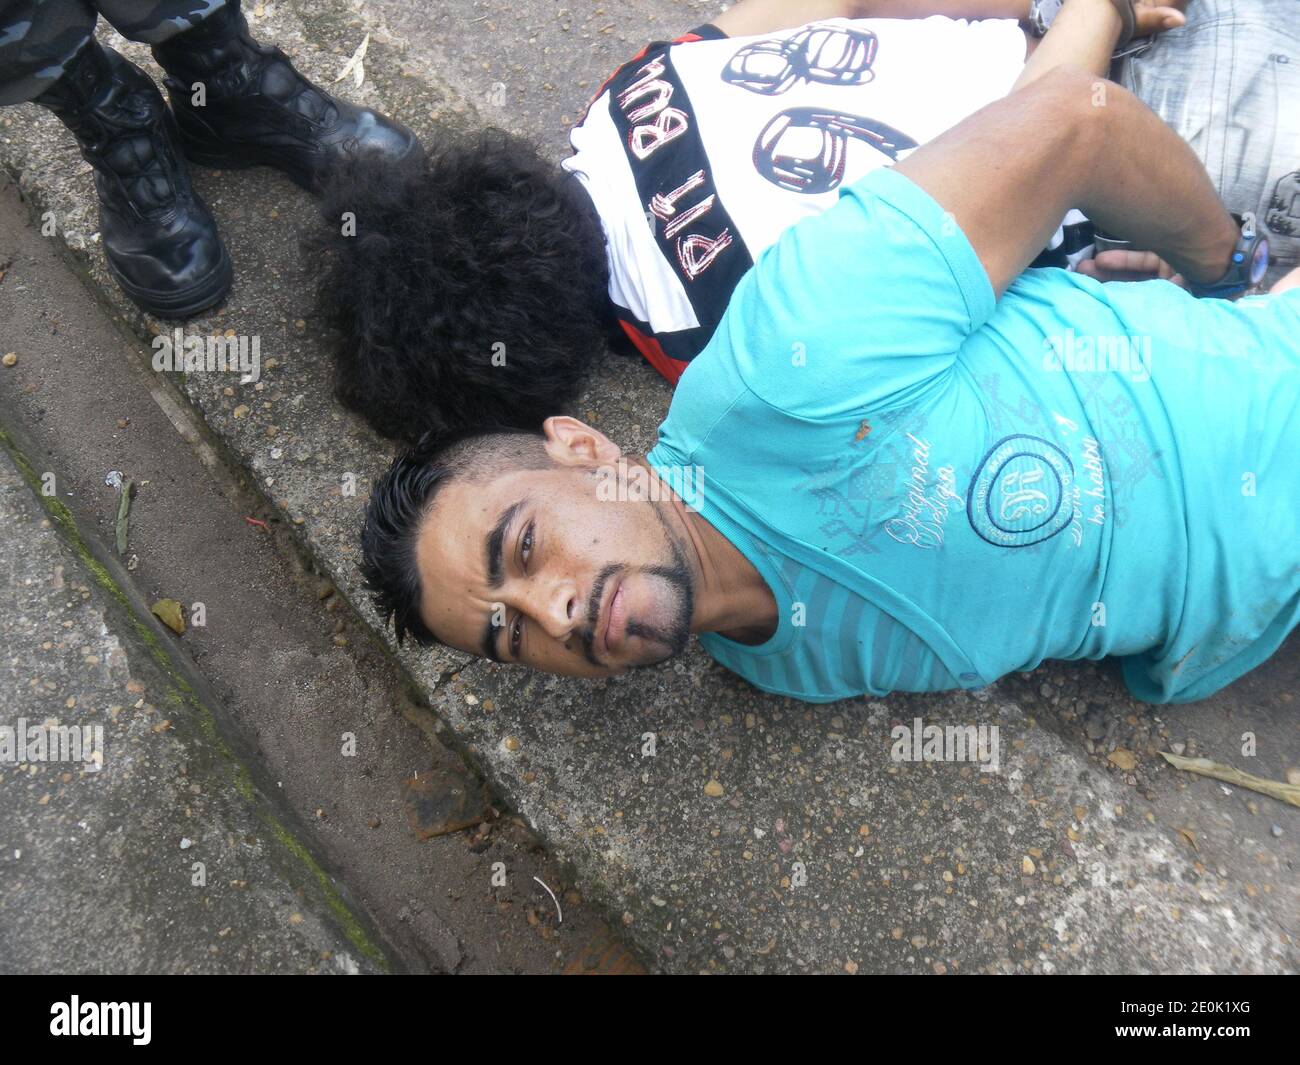 EMBARGOED FOR WEB AND APPS IN FRANCE UNTIL 14 AUGUST 2012. EXCLUSIVE. Arrestation de Manoelzinho et de son complice Brabo, a Macapa, la capitale de l'Etat amazonien d'Amapa, au Nord du Bresil, a la frontiere avec la Guyane, le vendredi 28.08.12. Accuses du meurtre de deux militaires francais, en Guyane, fin juin. In this photo: Manoel Ferreira Moura, dit 'Manoelzinho', 25 ans, nationalite bresilienne, accuse d'avoir tue deux militaires français. Arrete le 27.08.12, avec son complice Ronaldo Silva Lima, dit 'Brabo”, age de 30 ans. Interpeles par le le Bope (l'unite d'elite de la police militair Stock Photo